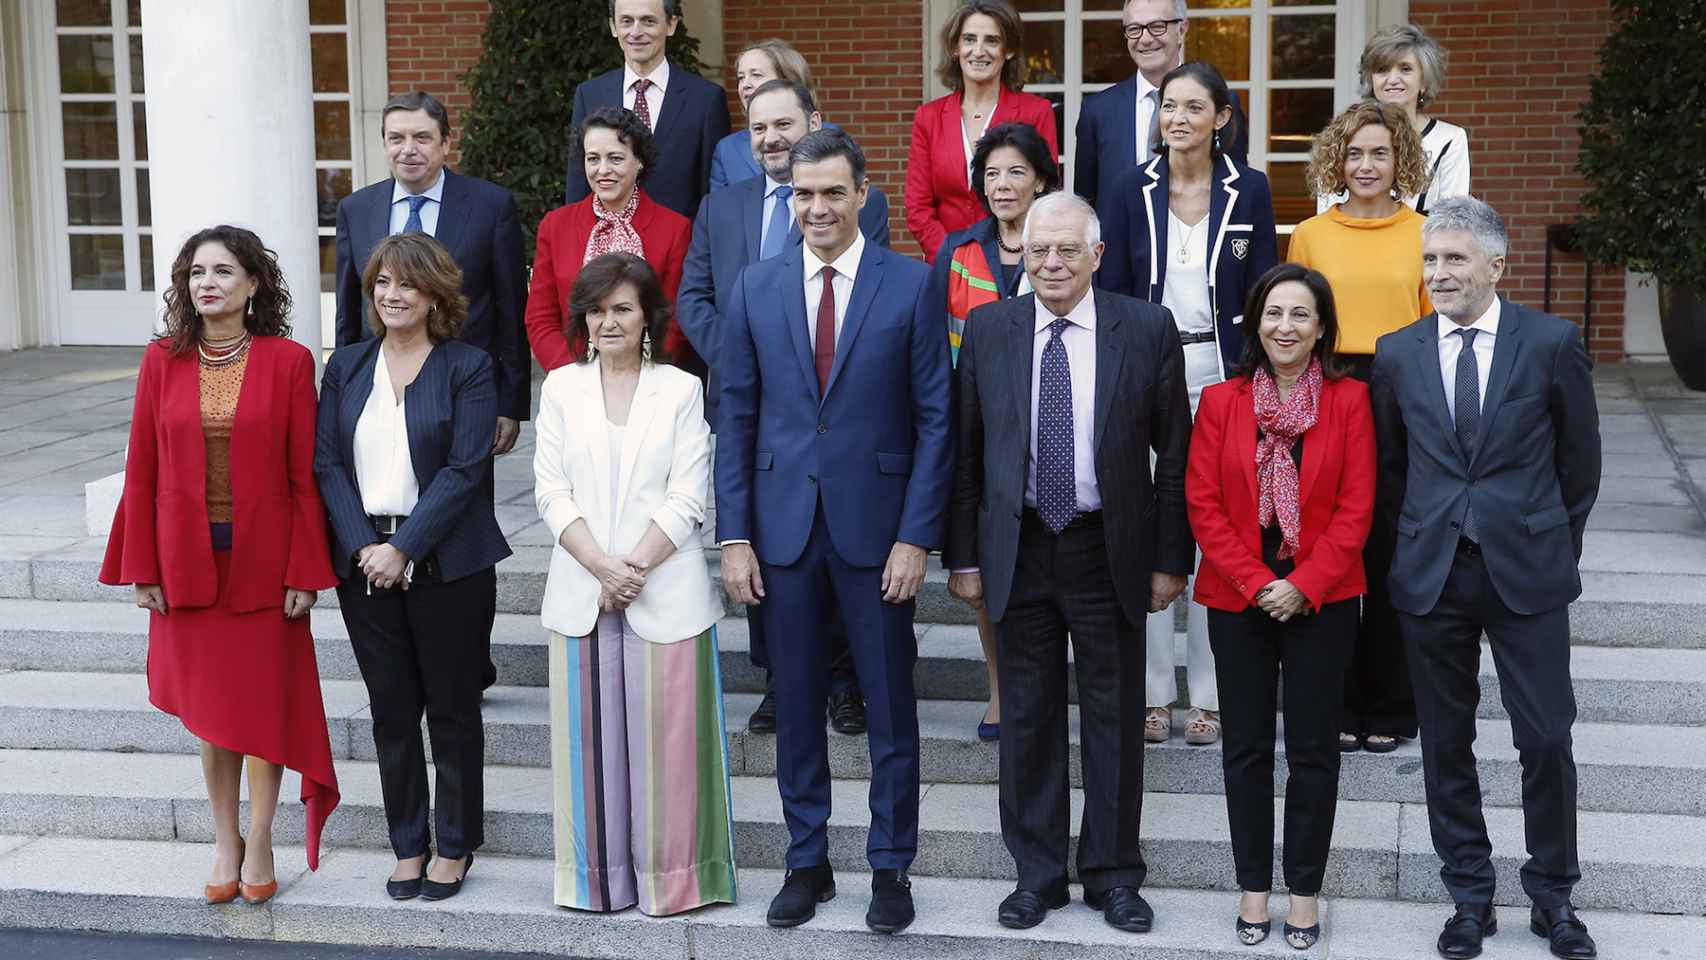 Foto de familia del Gobierno de Sánchez tomada a principios de octubre.